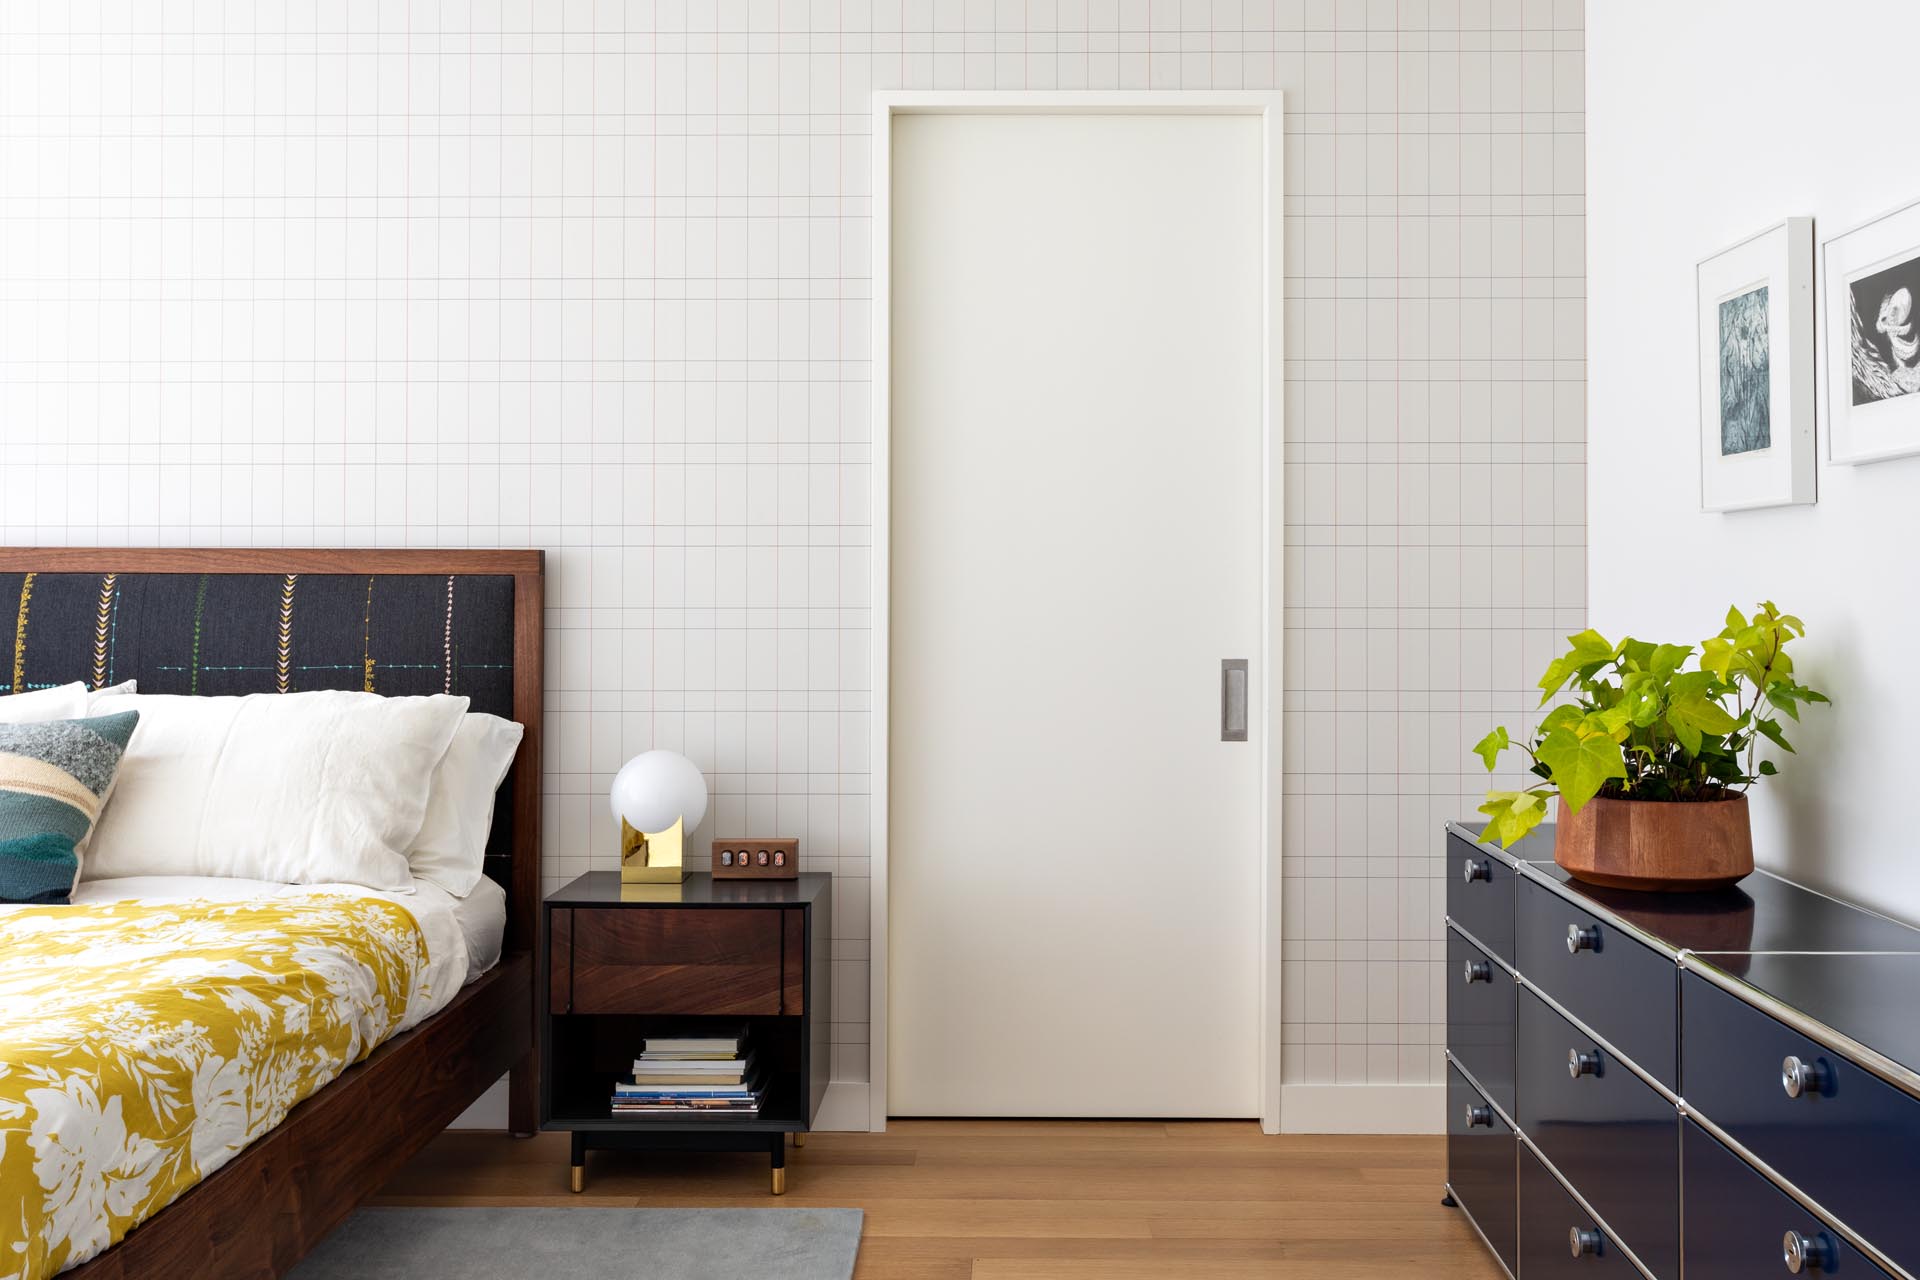 Современная главная спальня с деревянной мебелью, яркими элементами декора и стеной с графическим акцентом.